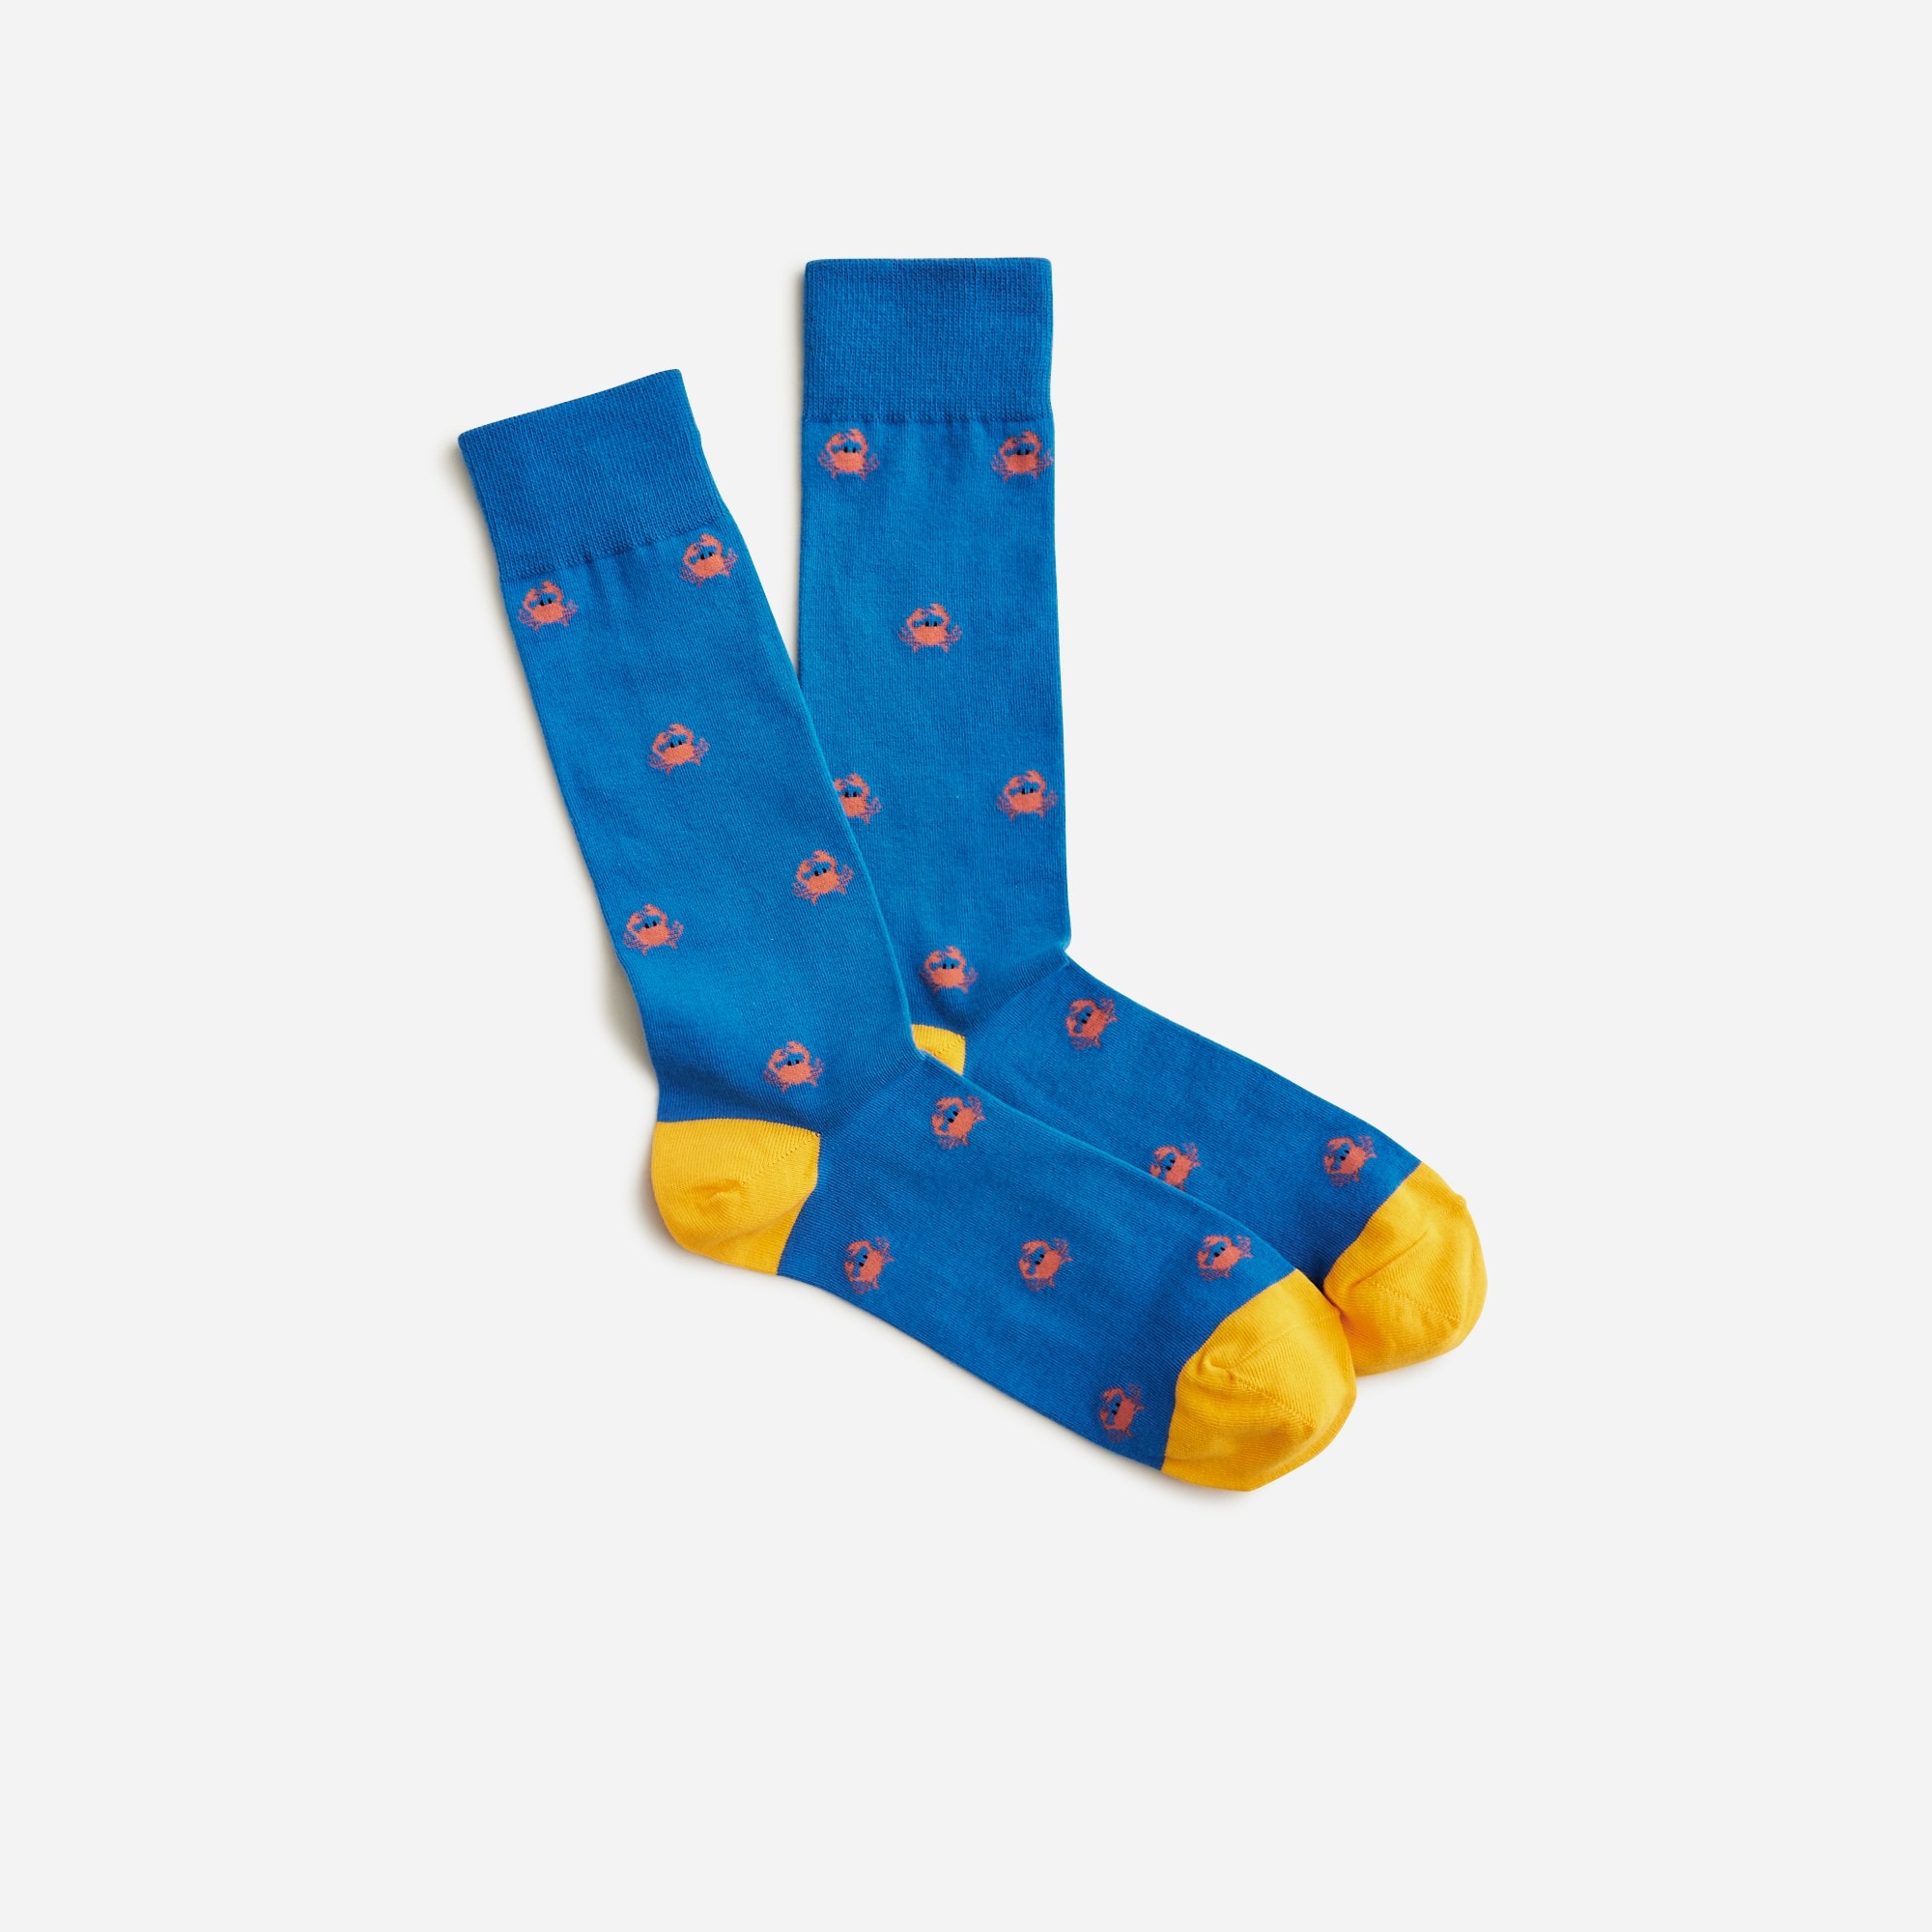 Jcrew Critter socks